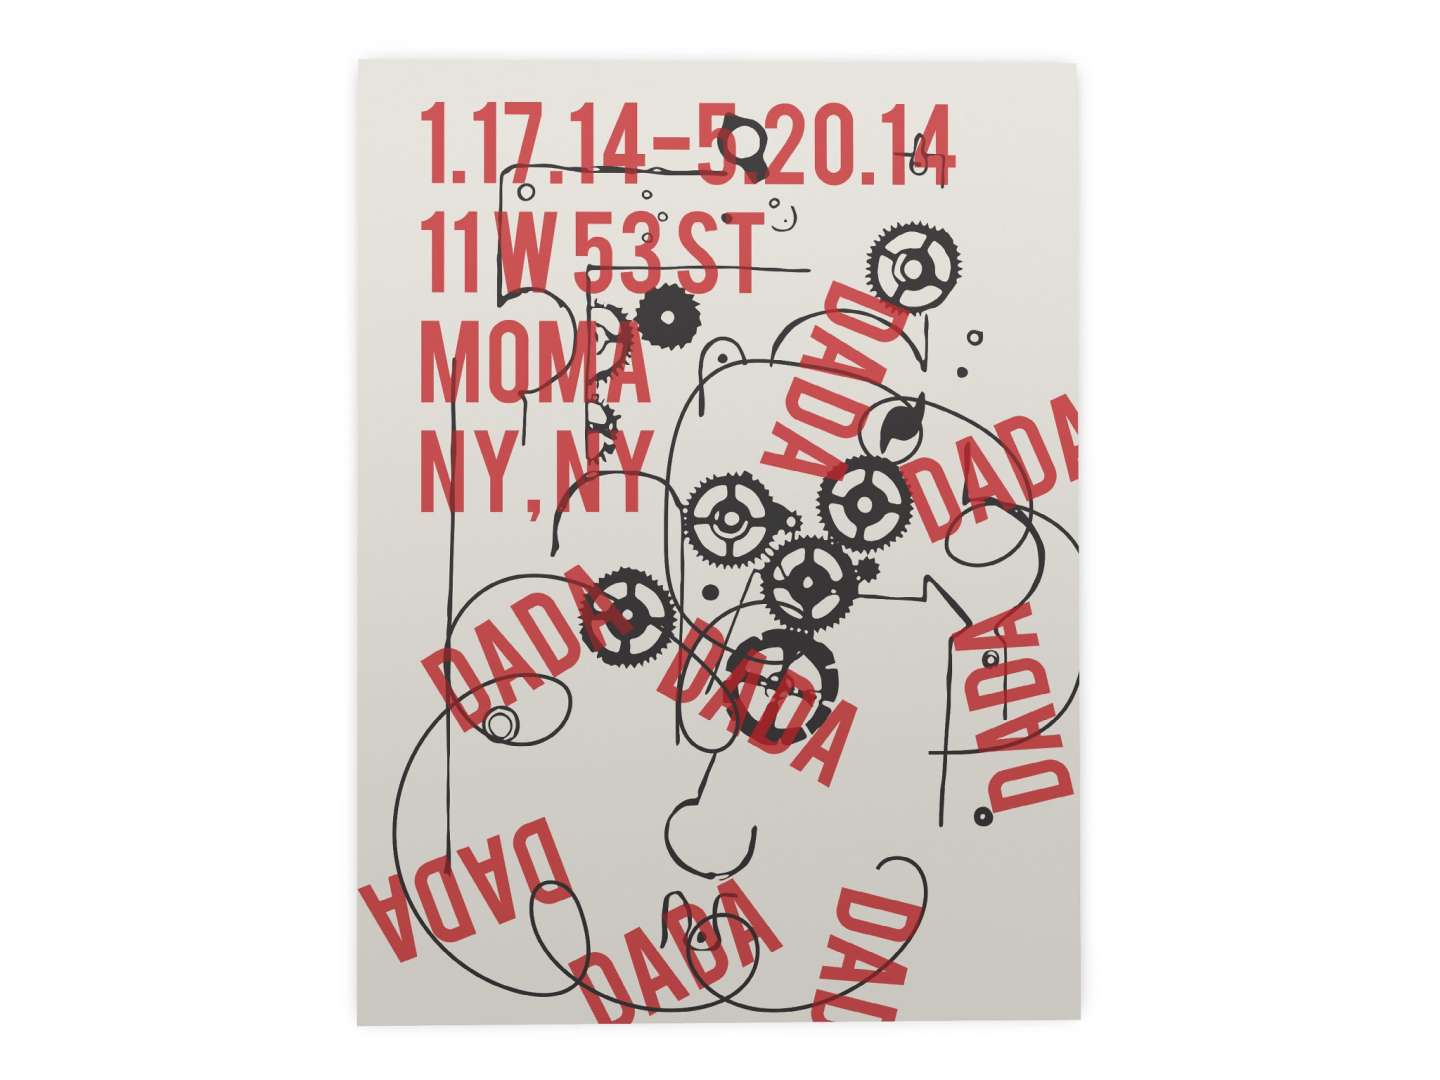 MoMA Exhibit Posters